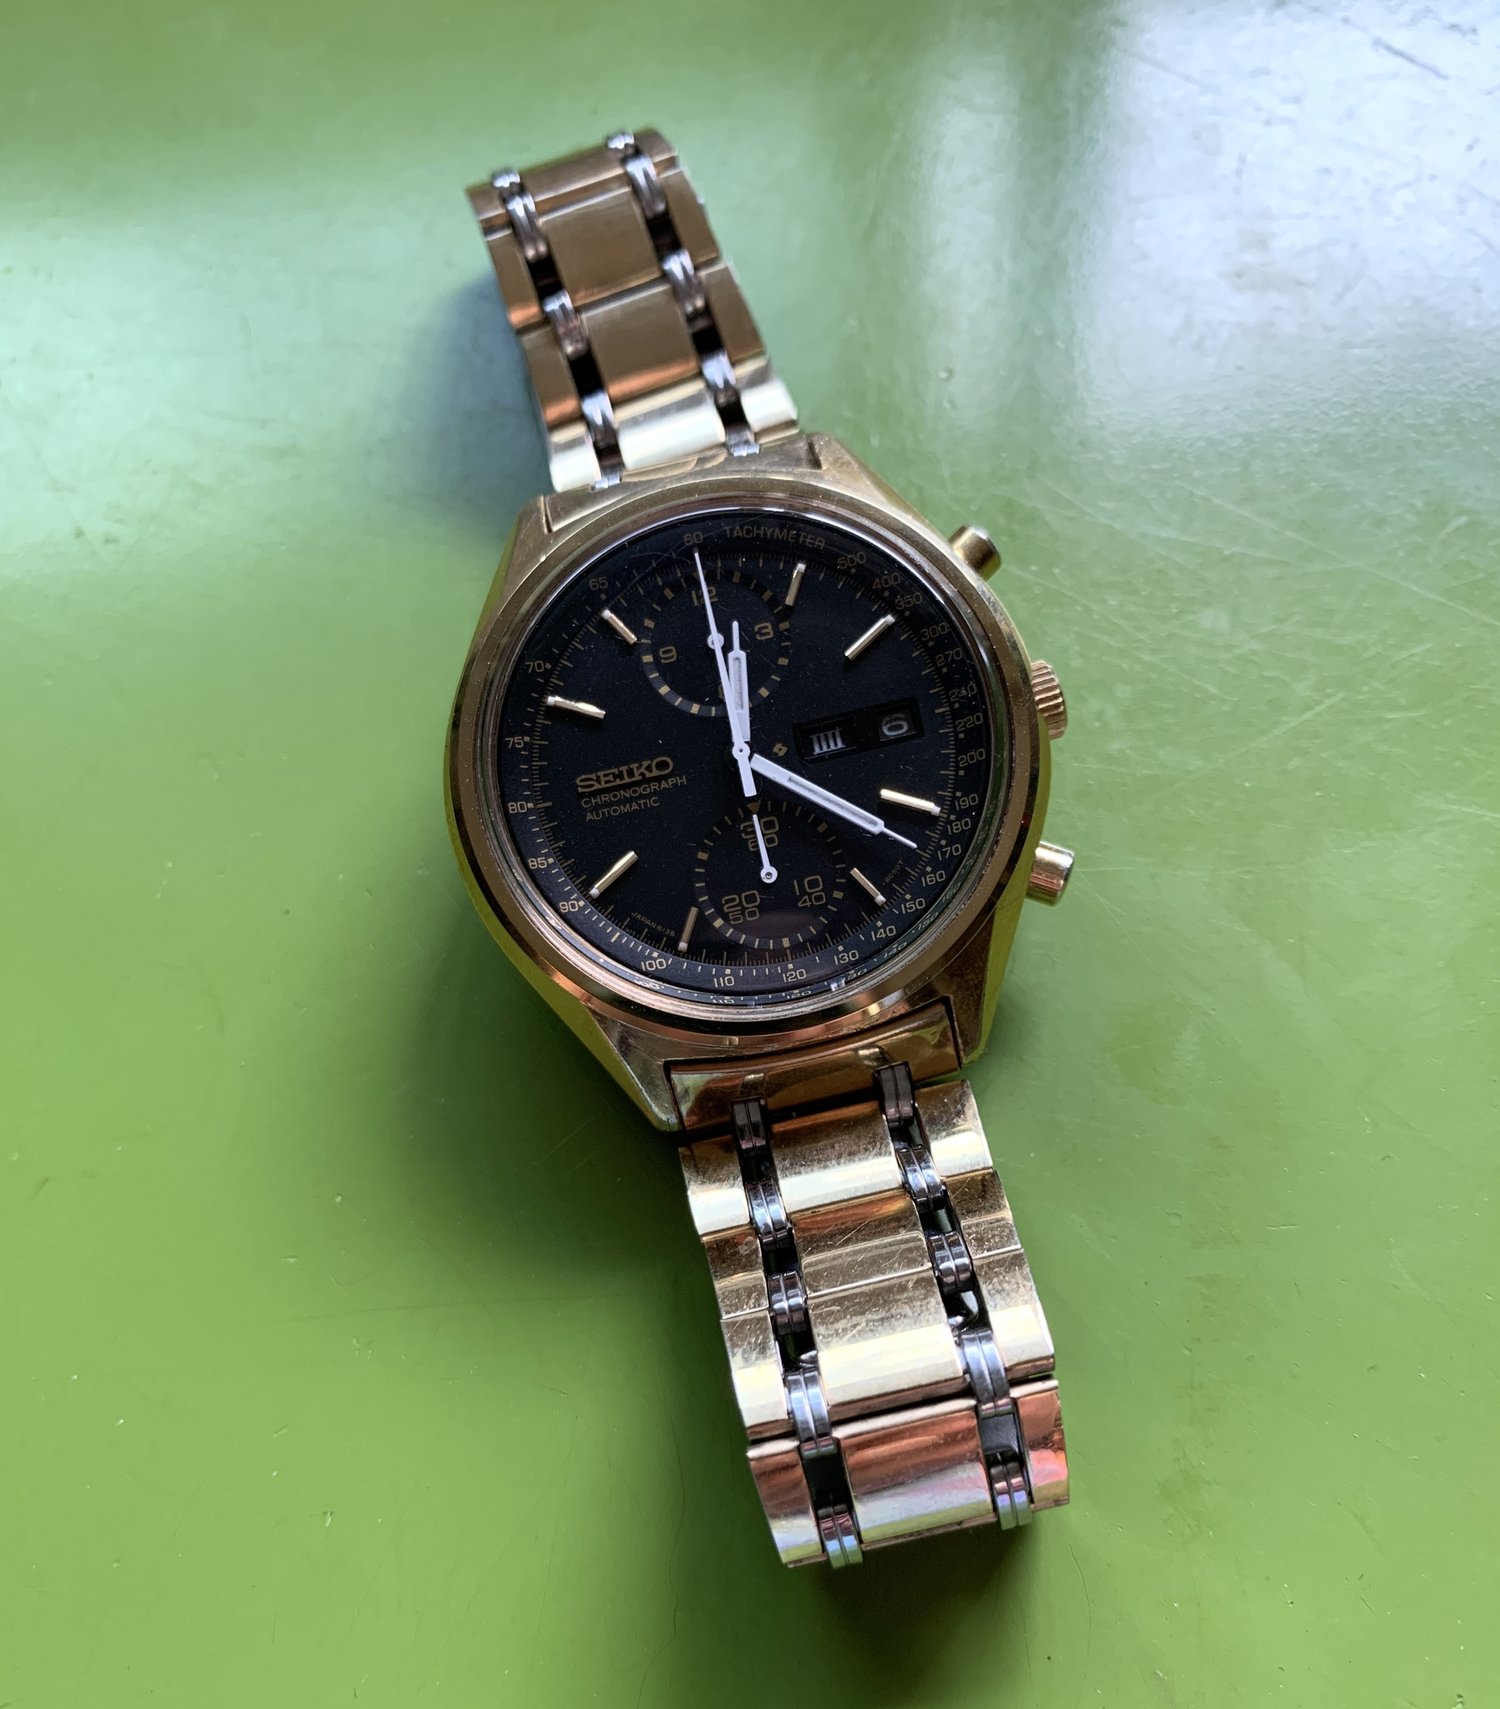 Seiko 6138-8020 “Black Panda” from February 1977 — Klein Vintage Watch